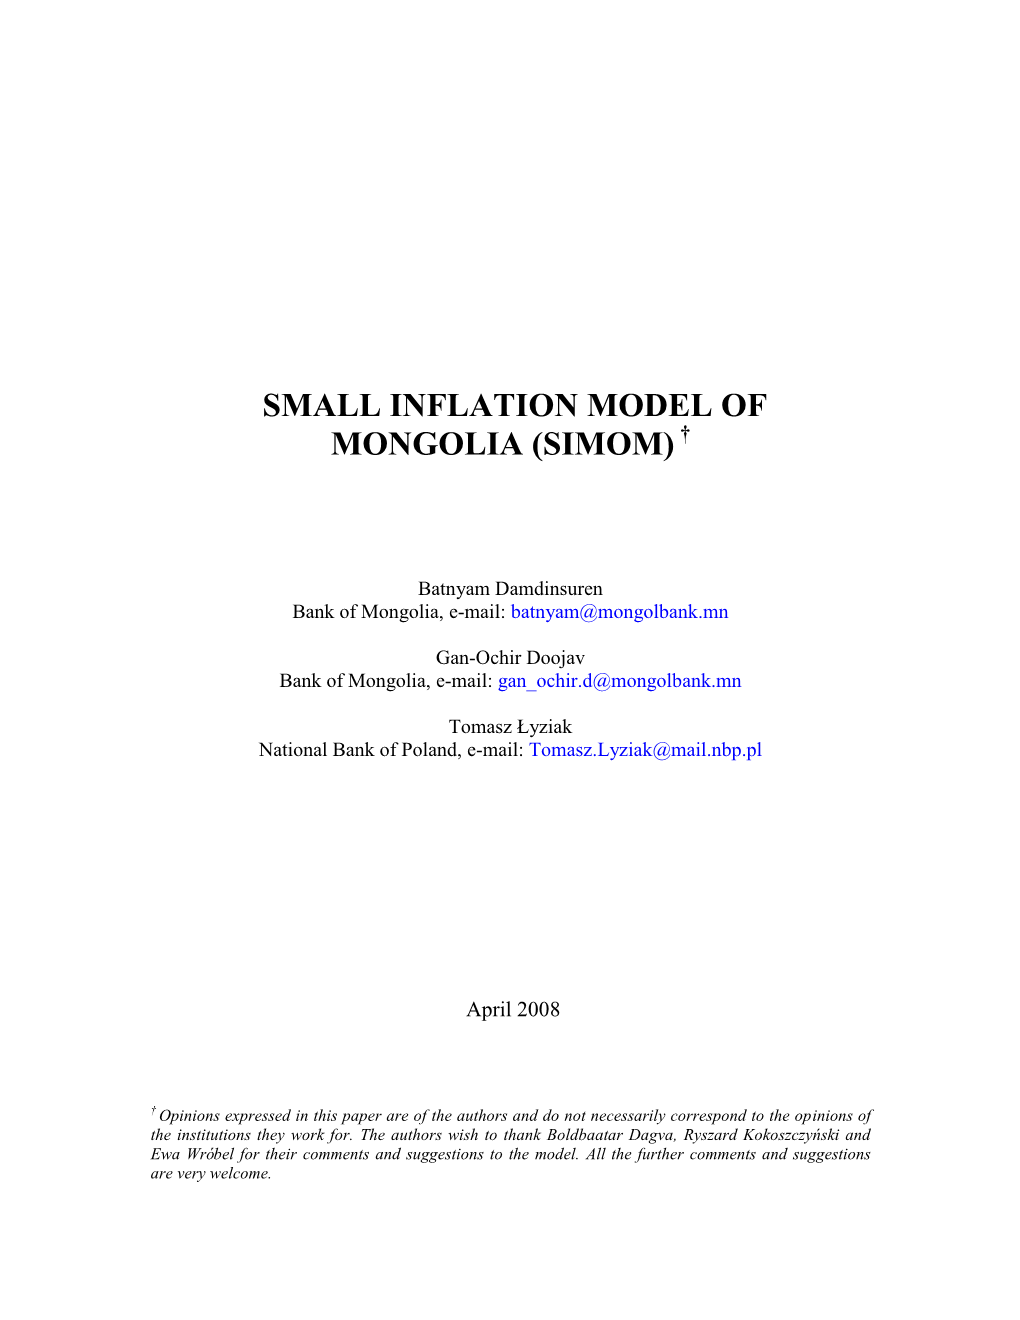 Small Inflation Model of Mongolia (Simom) †